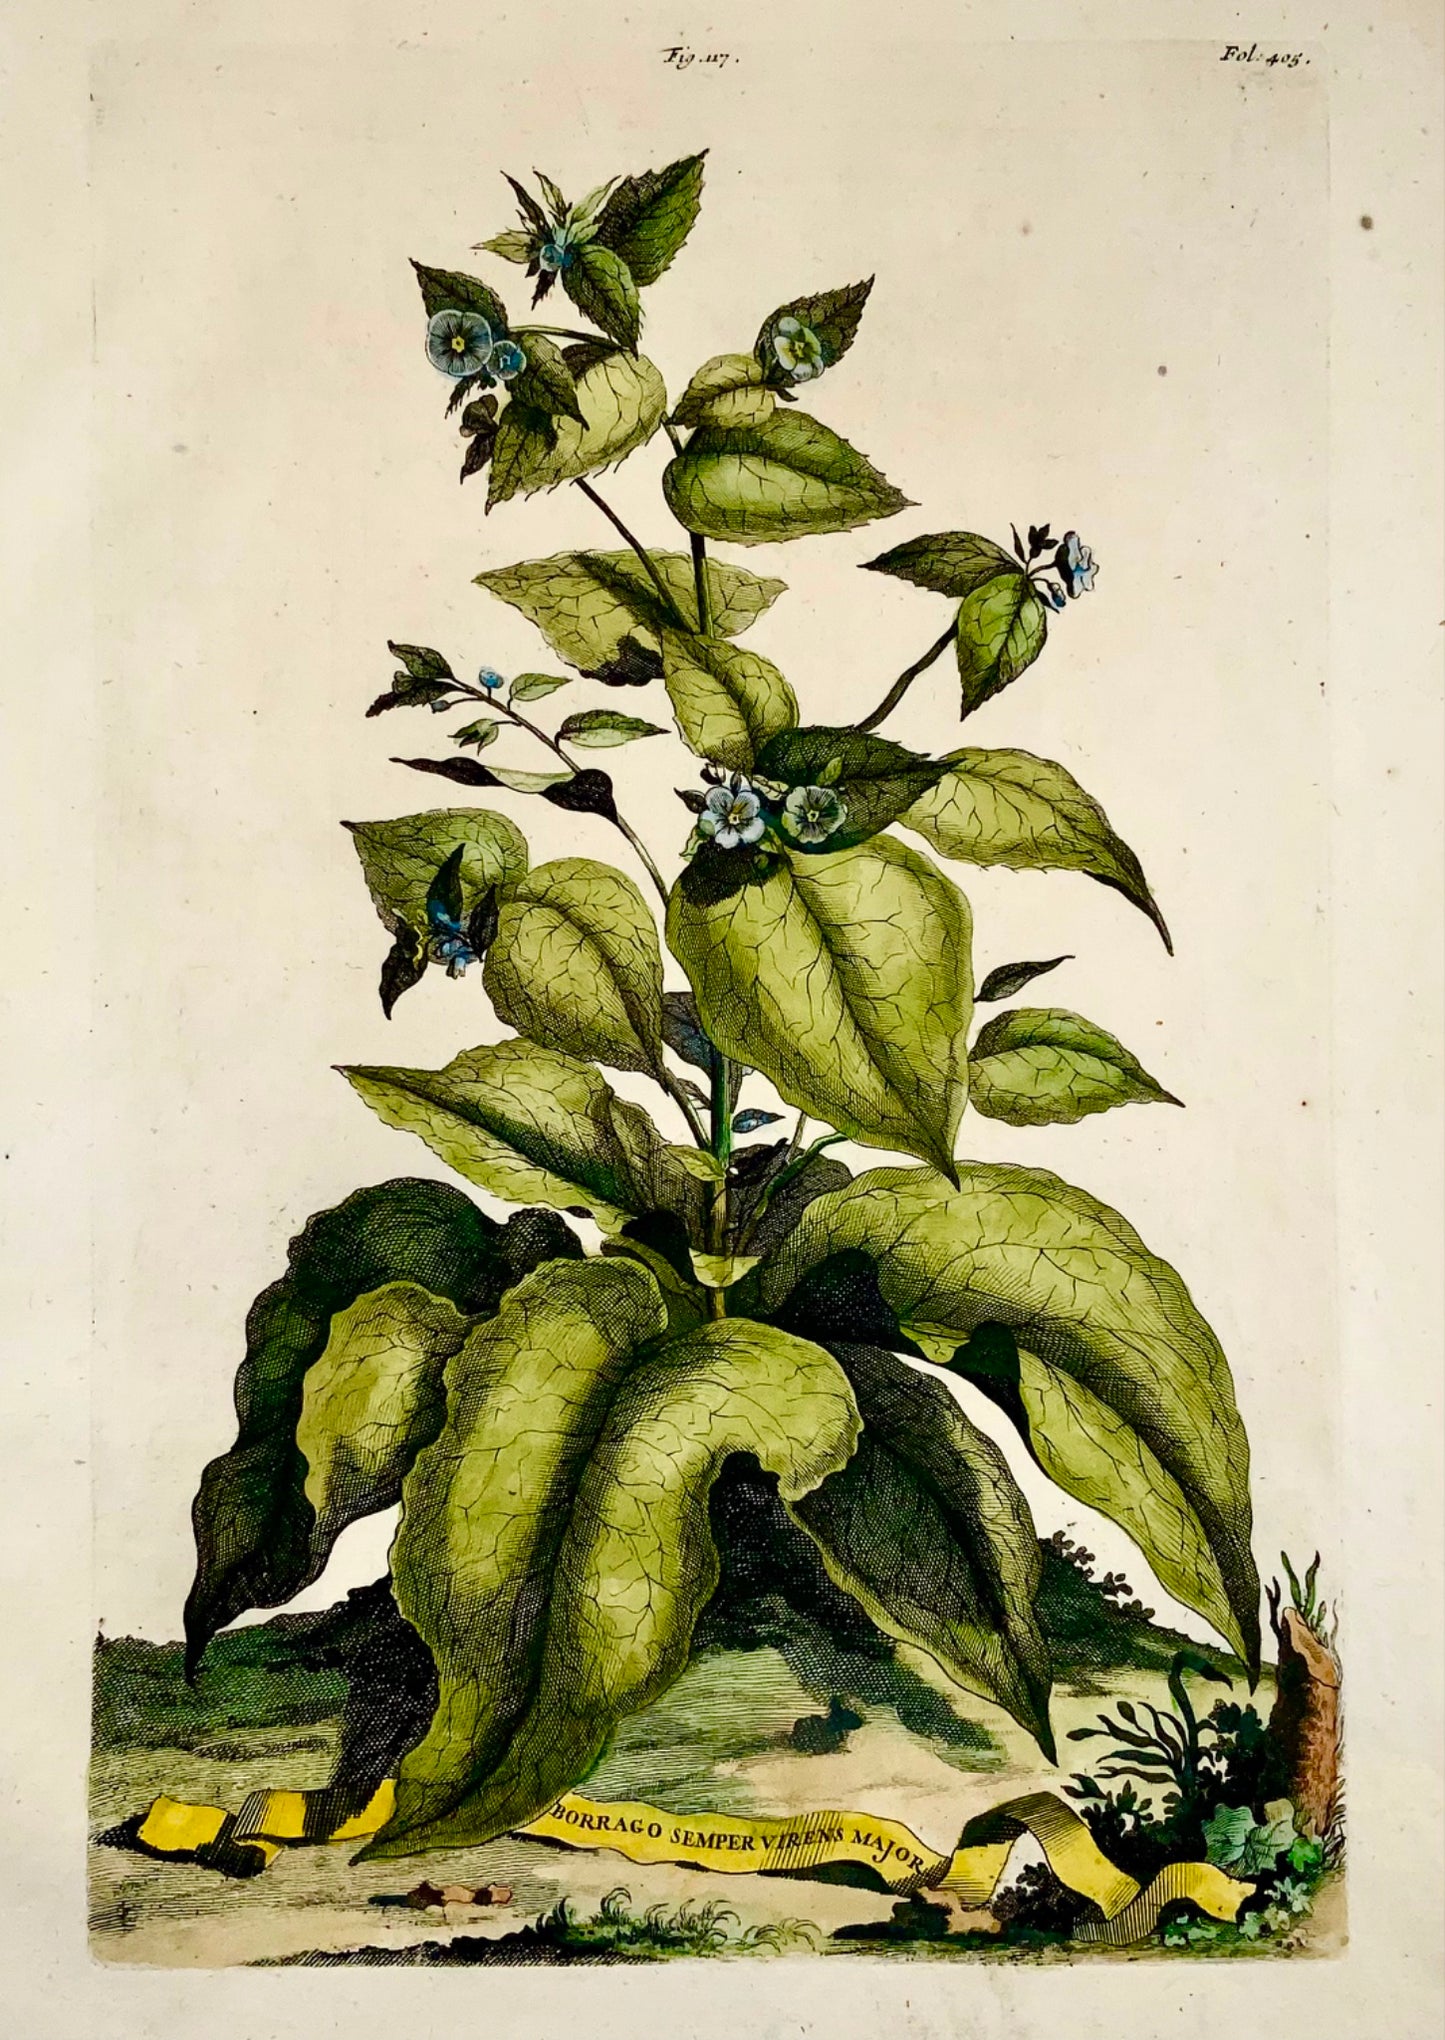 1696 Abraham Munting - Folio botanique - FORGET-ME-NOT Borrago sempre virens - Botanique